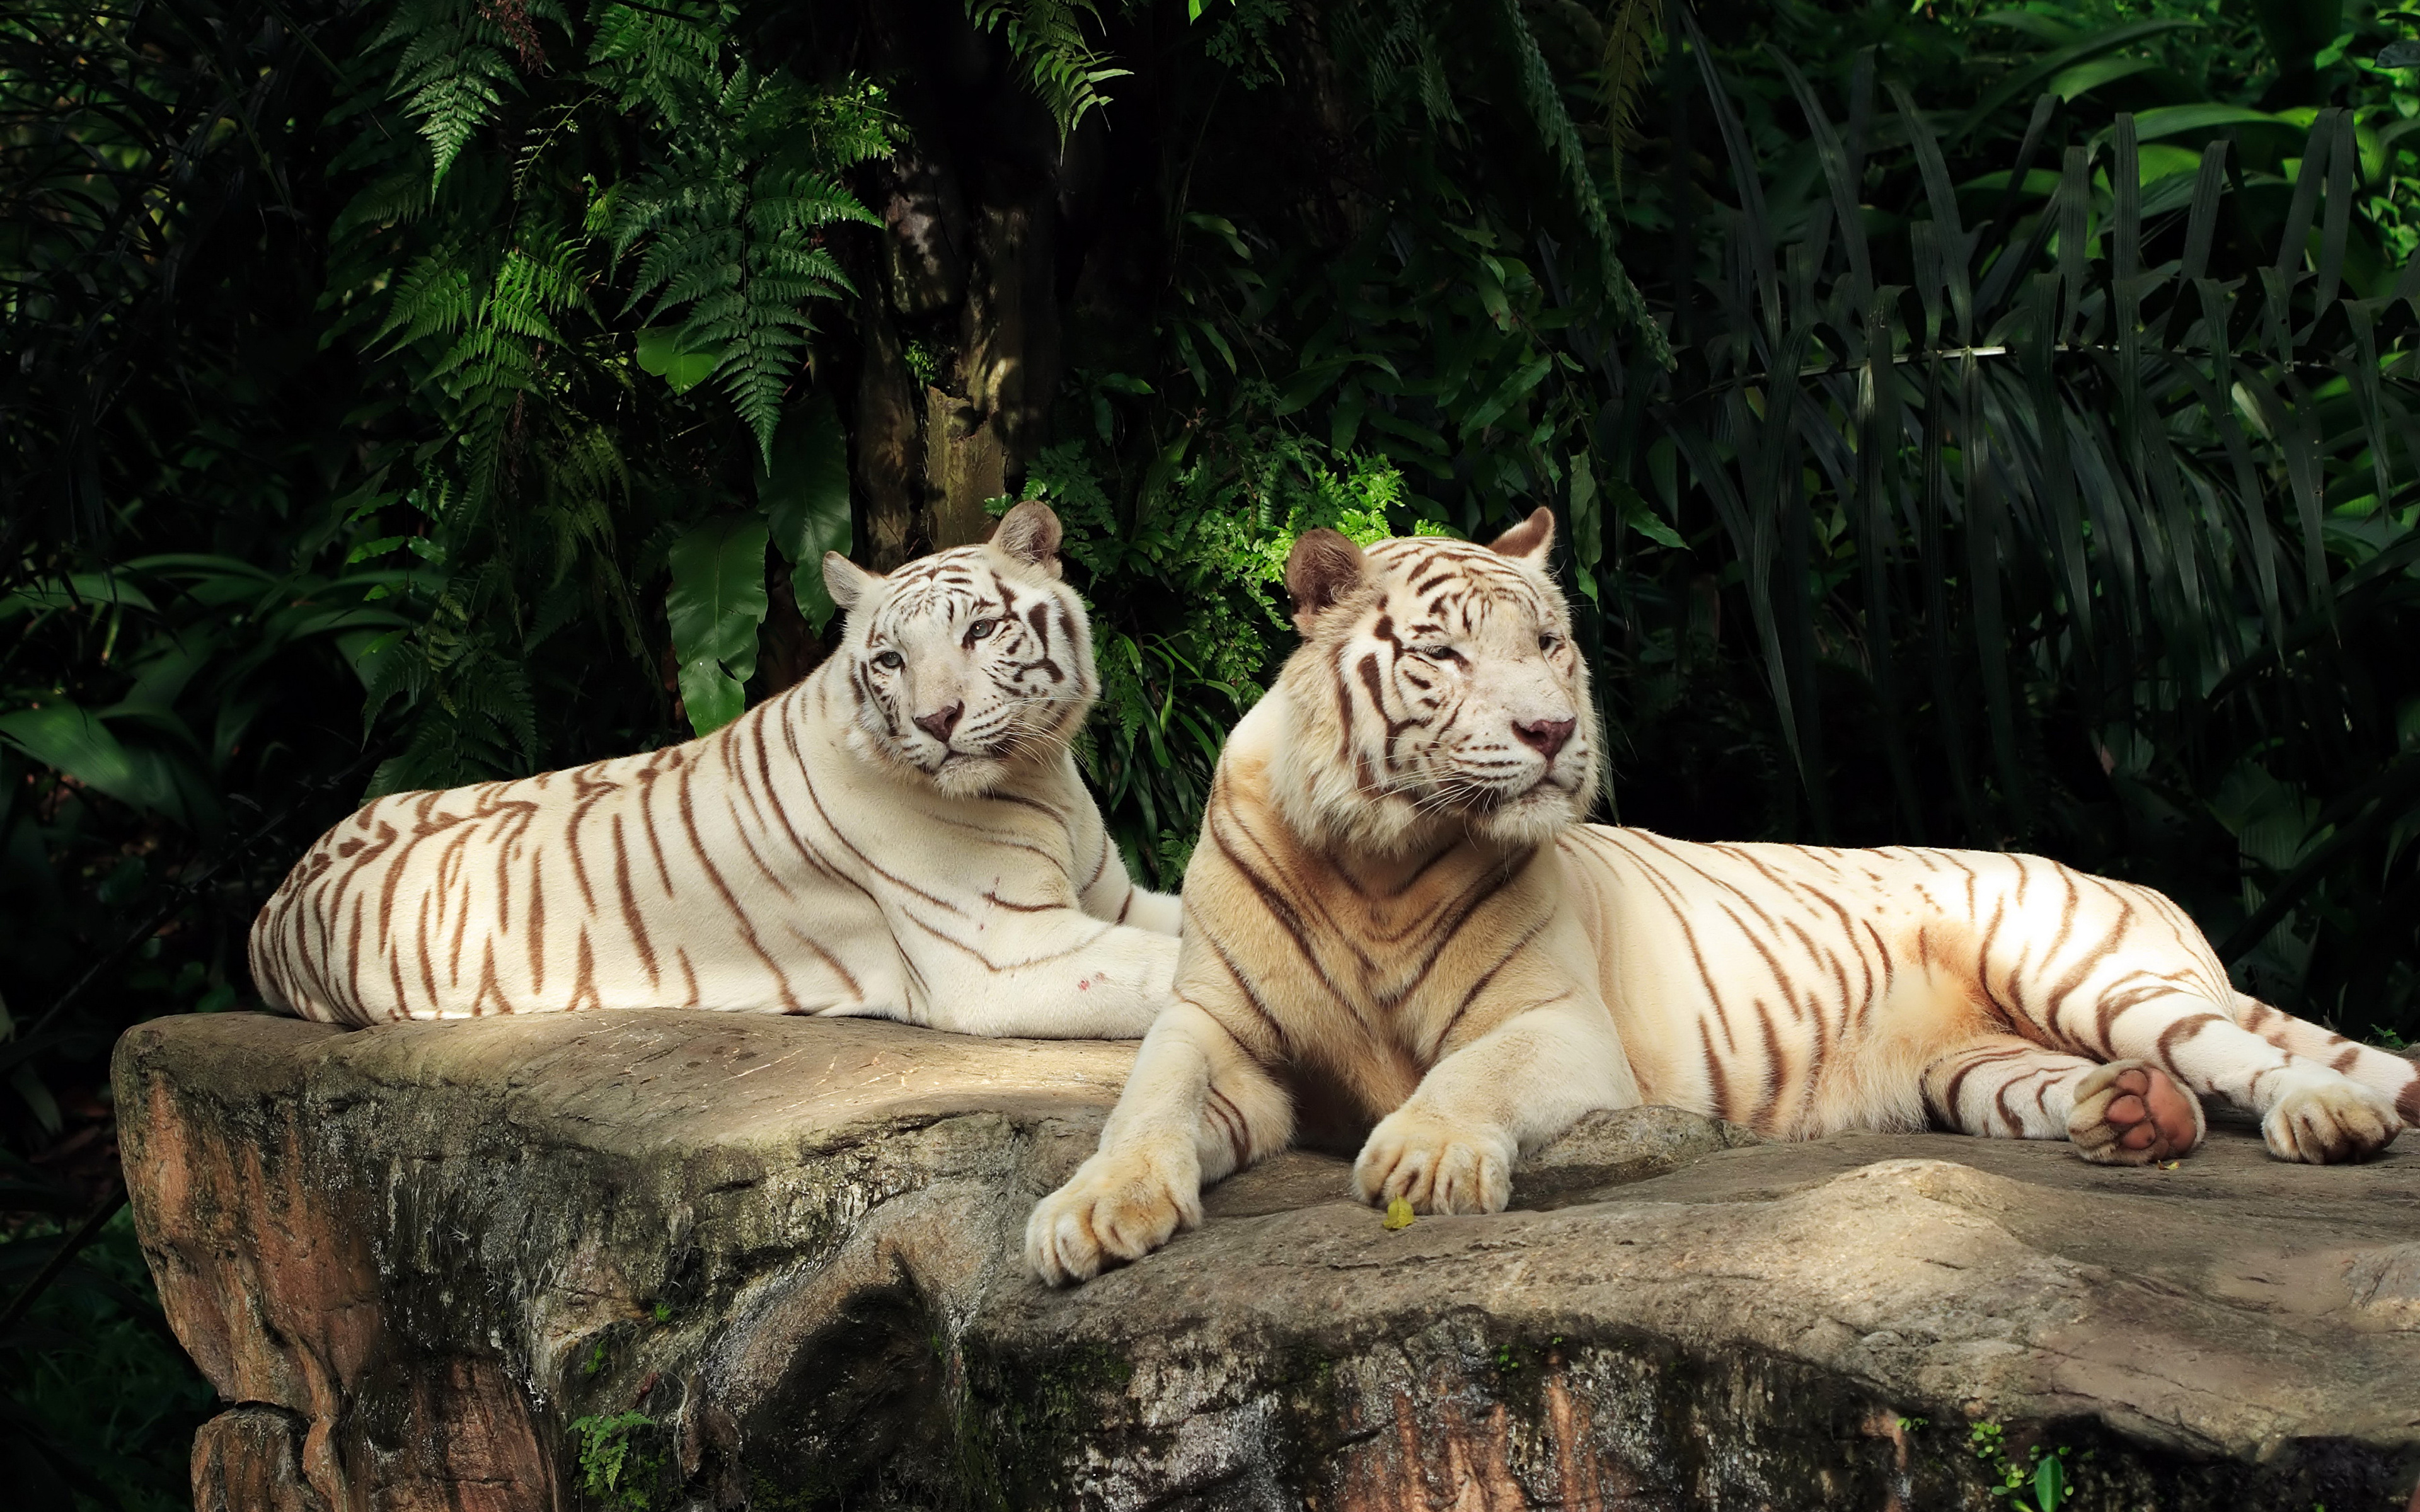 Обои на телефон самые красивые в мире. Бенгальский тигр альбинос. Золотой тигр альбинос. Белый тигр альбинос.